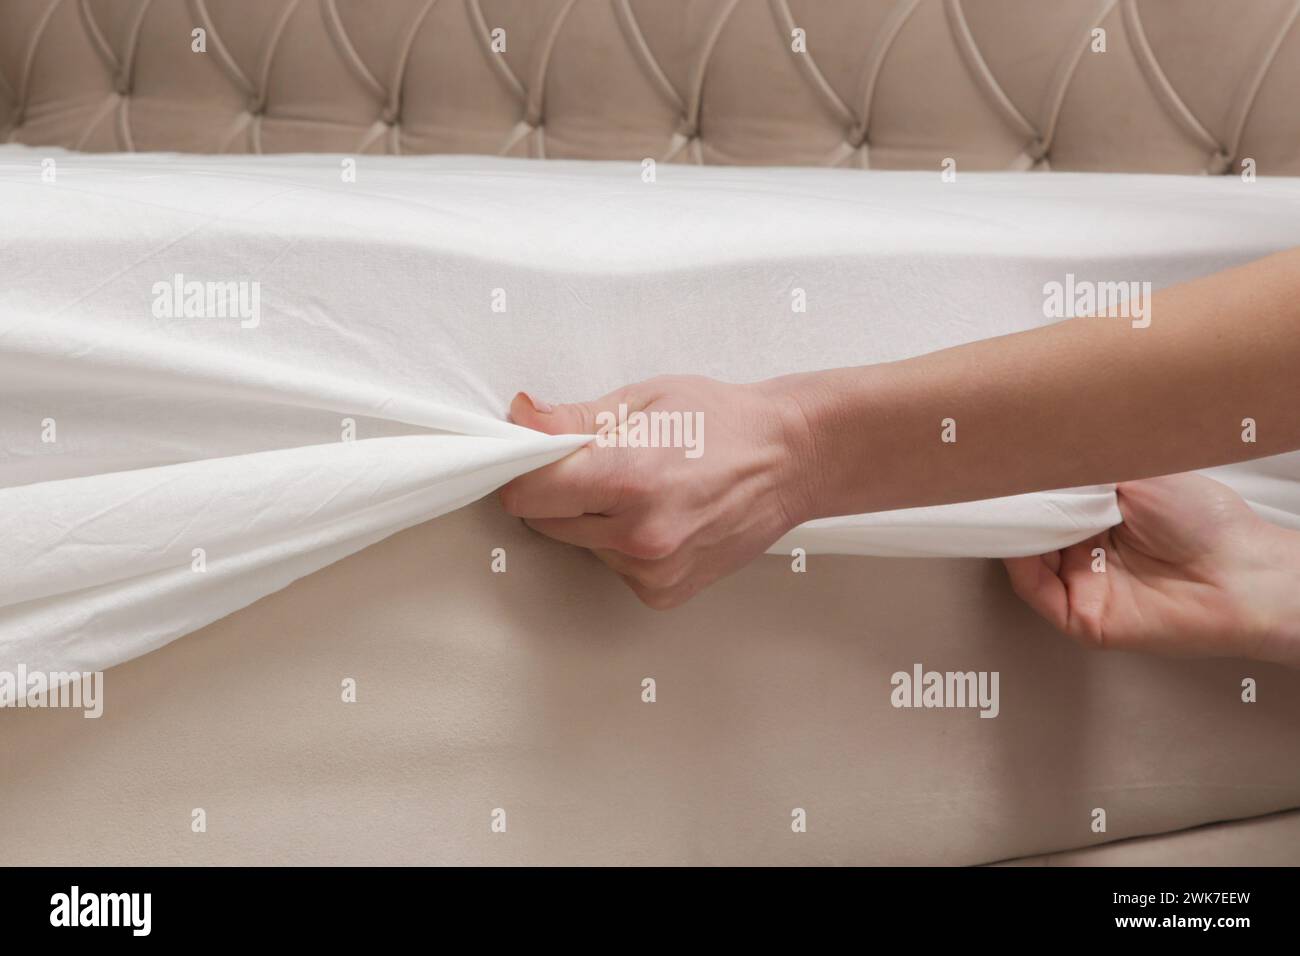 Bettwäsche wechseln. Die Frau zieht ein passendes weißes Baumwolltuch auf eine Matratze, während sie das Bett macht. Stockfoto